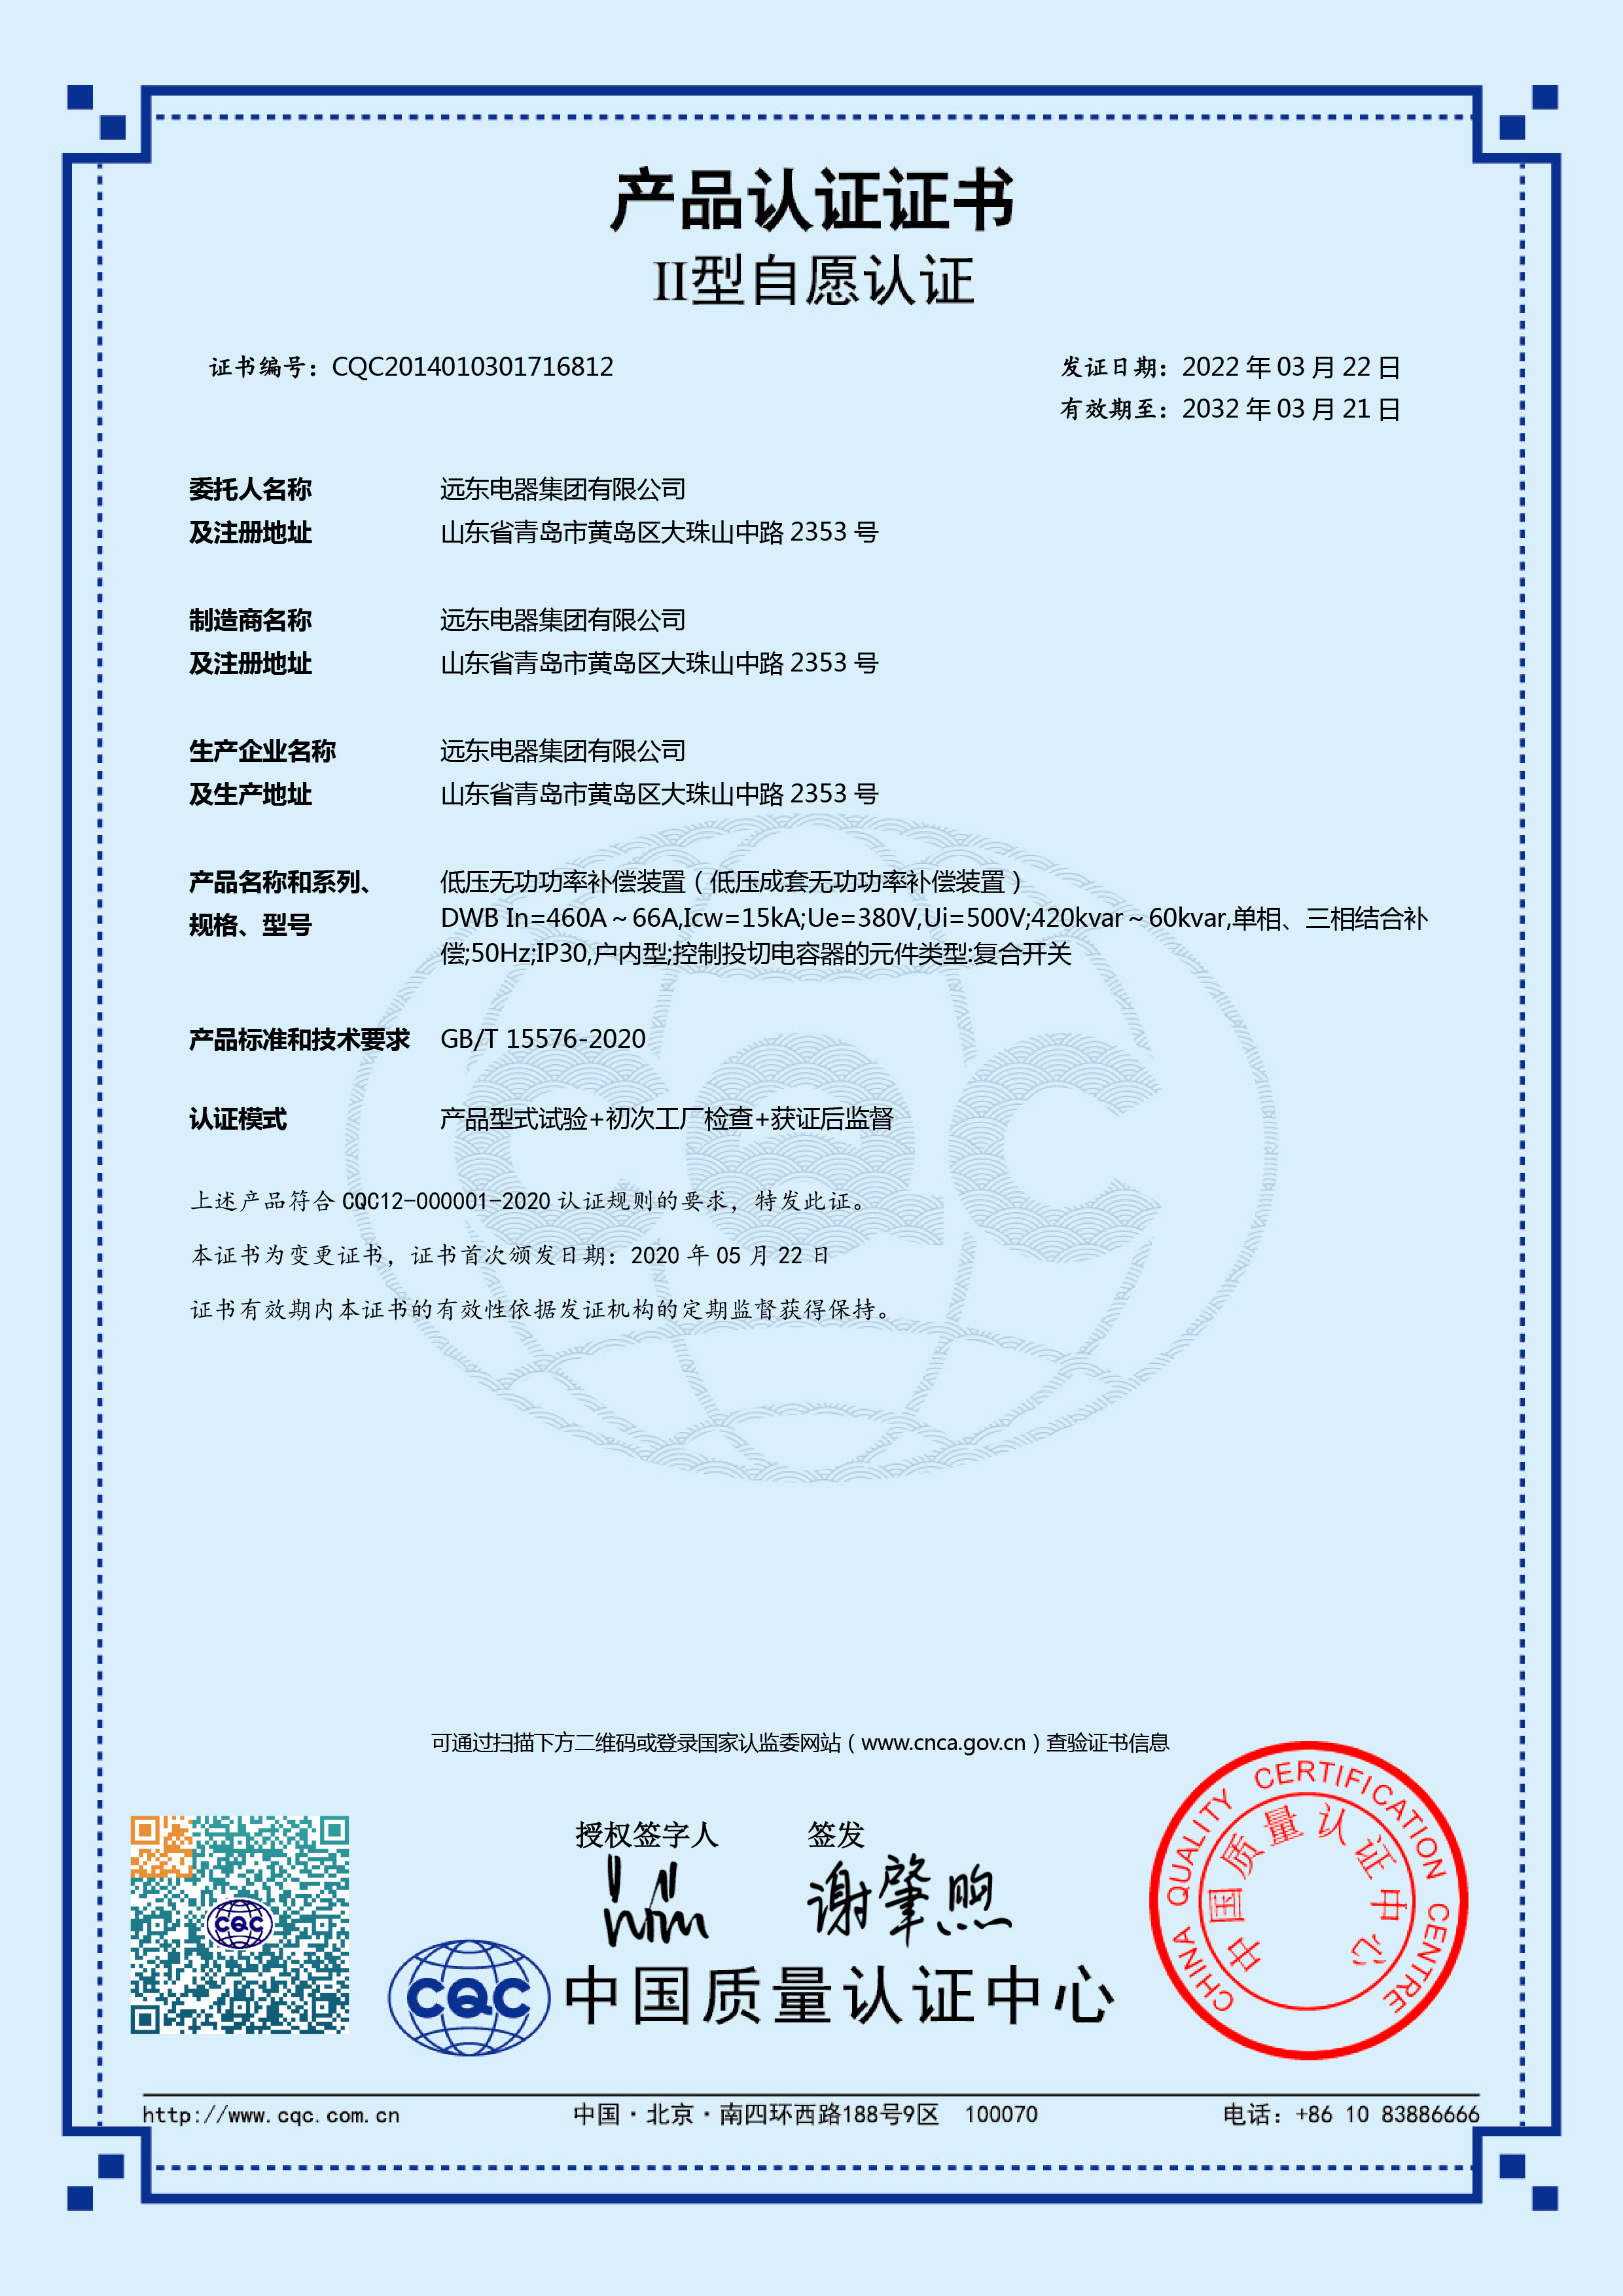 DWB 460A-66ACQC产品认证证书.jpg